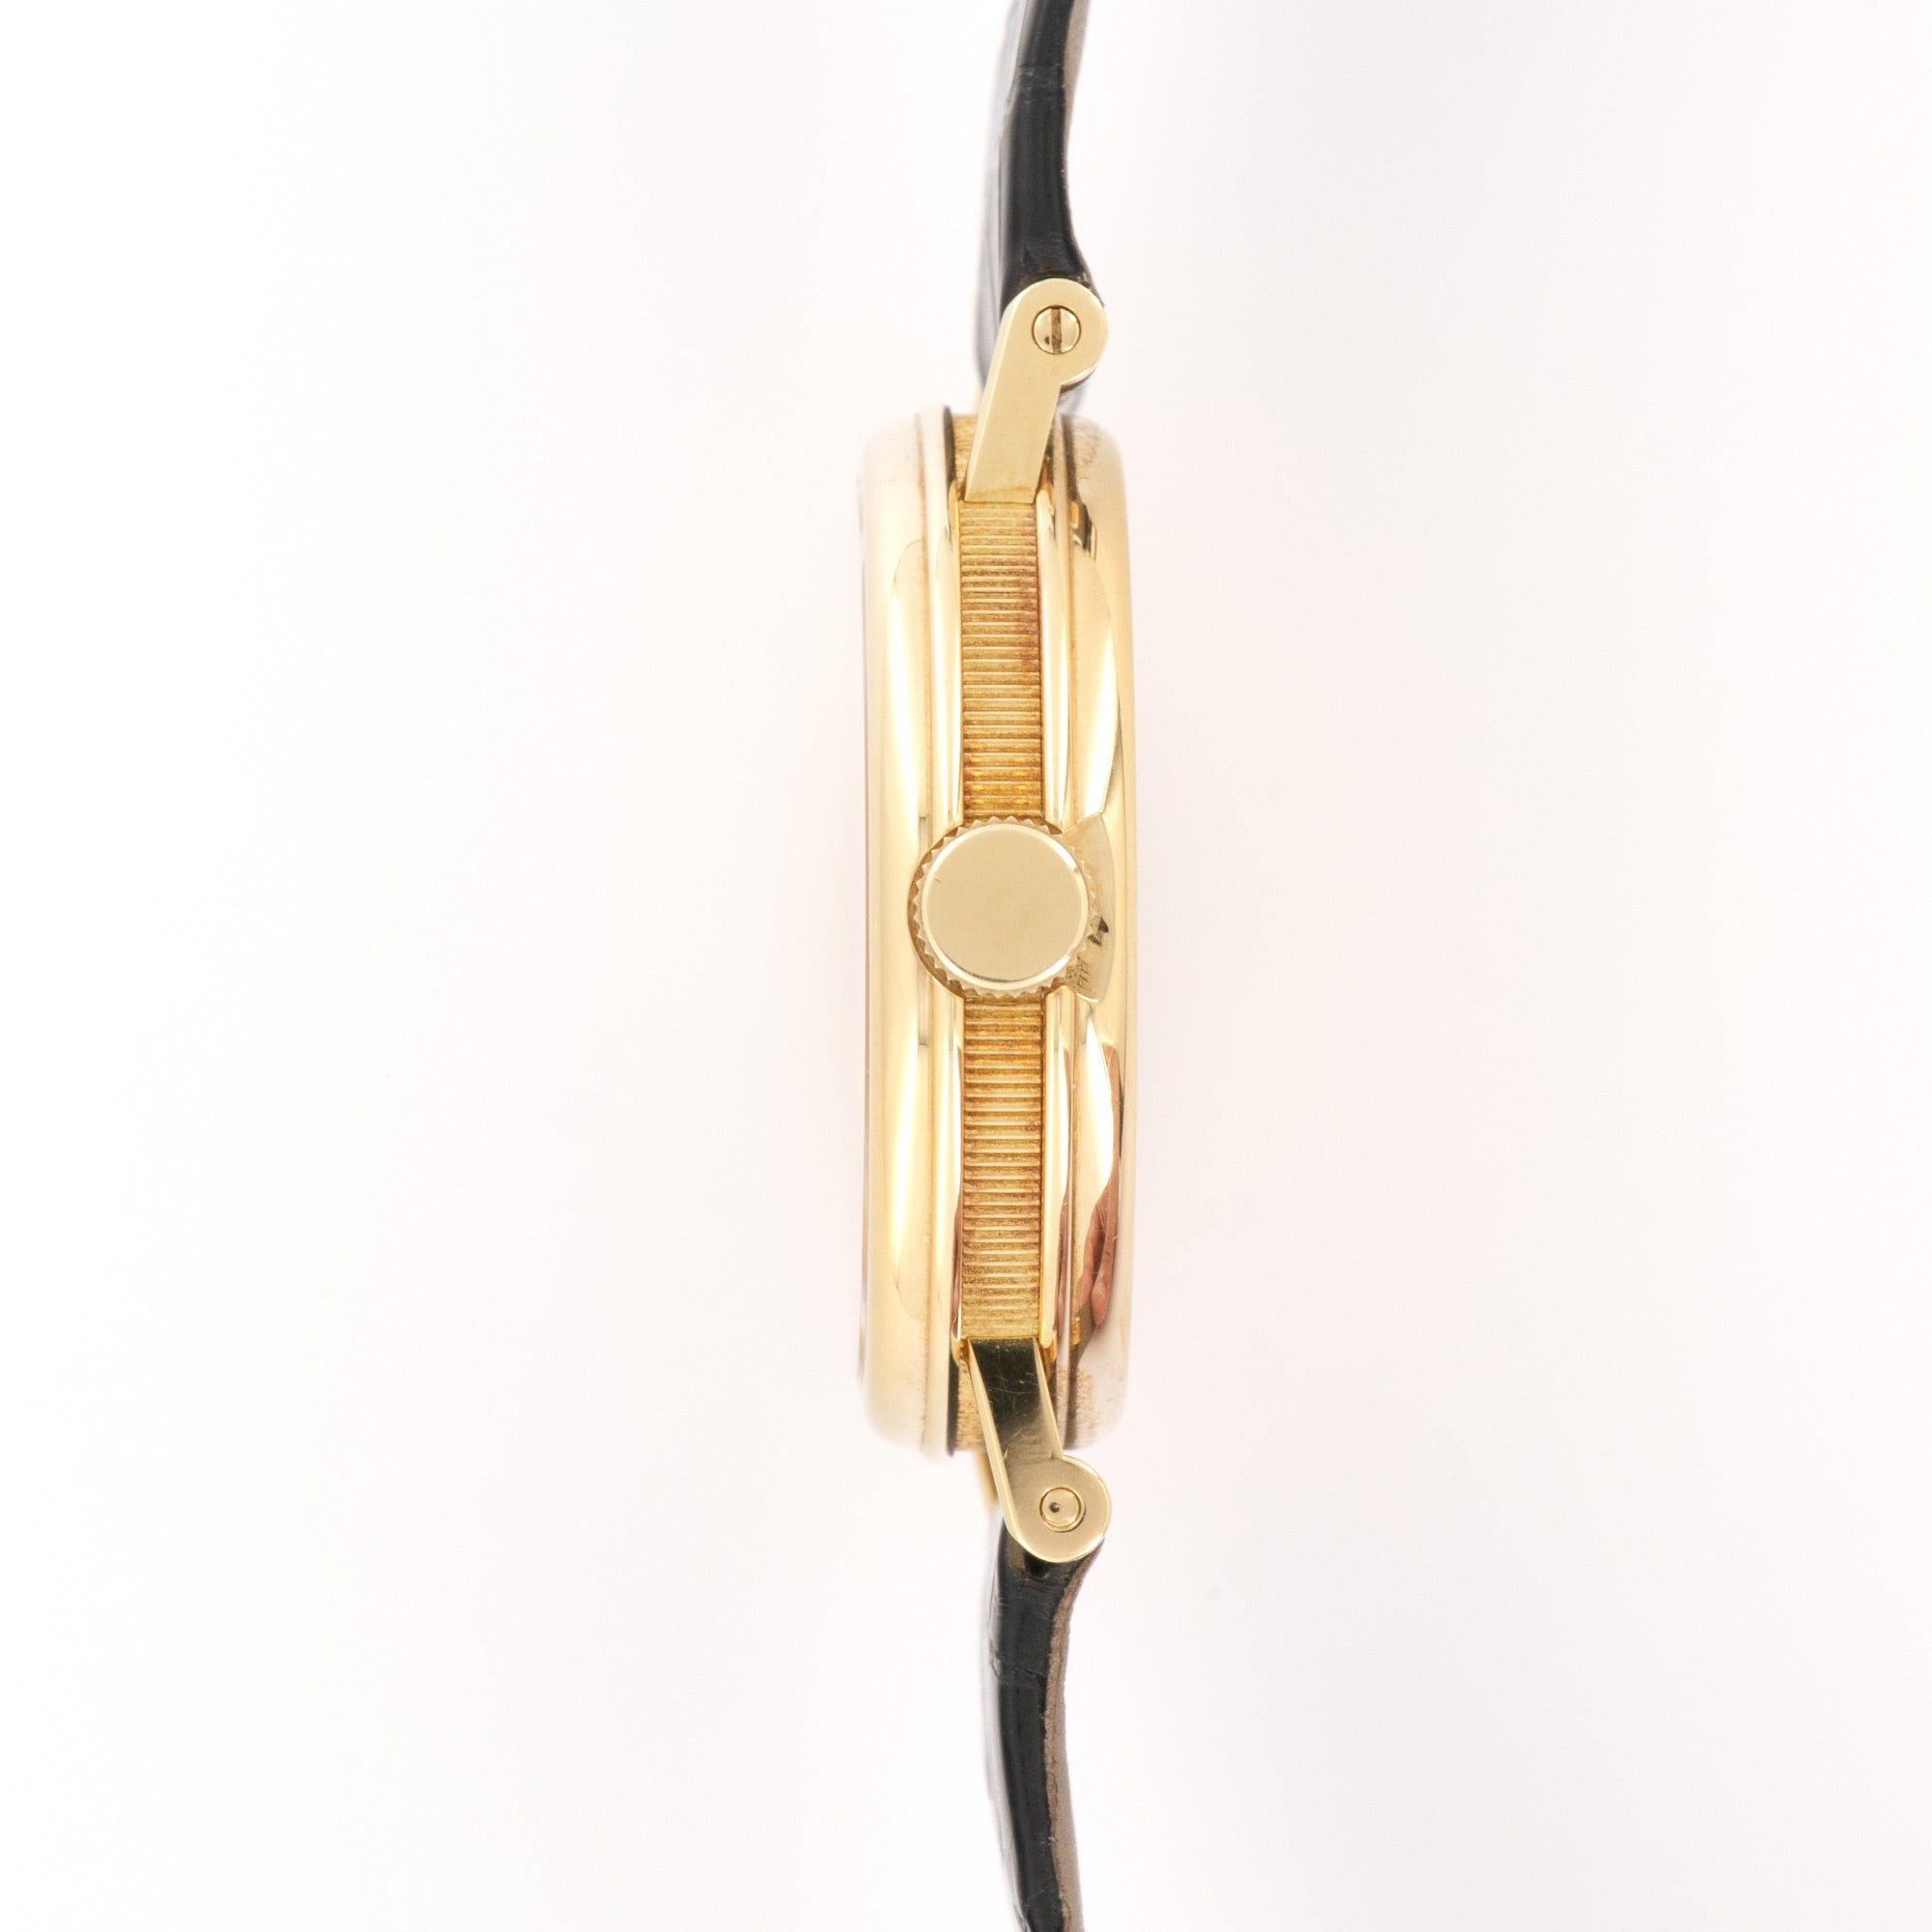 Breguet - Breguet Yellow Gold Messidor Tourbillon Watch Ref. 3350 - The Keystone Watches